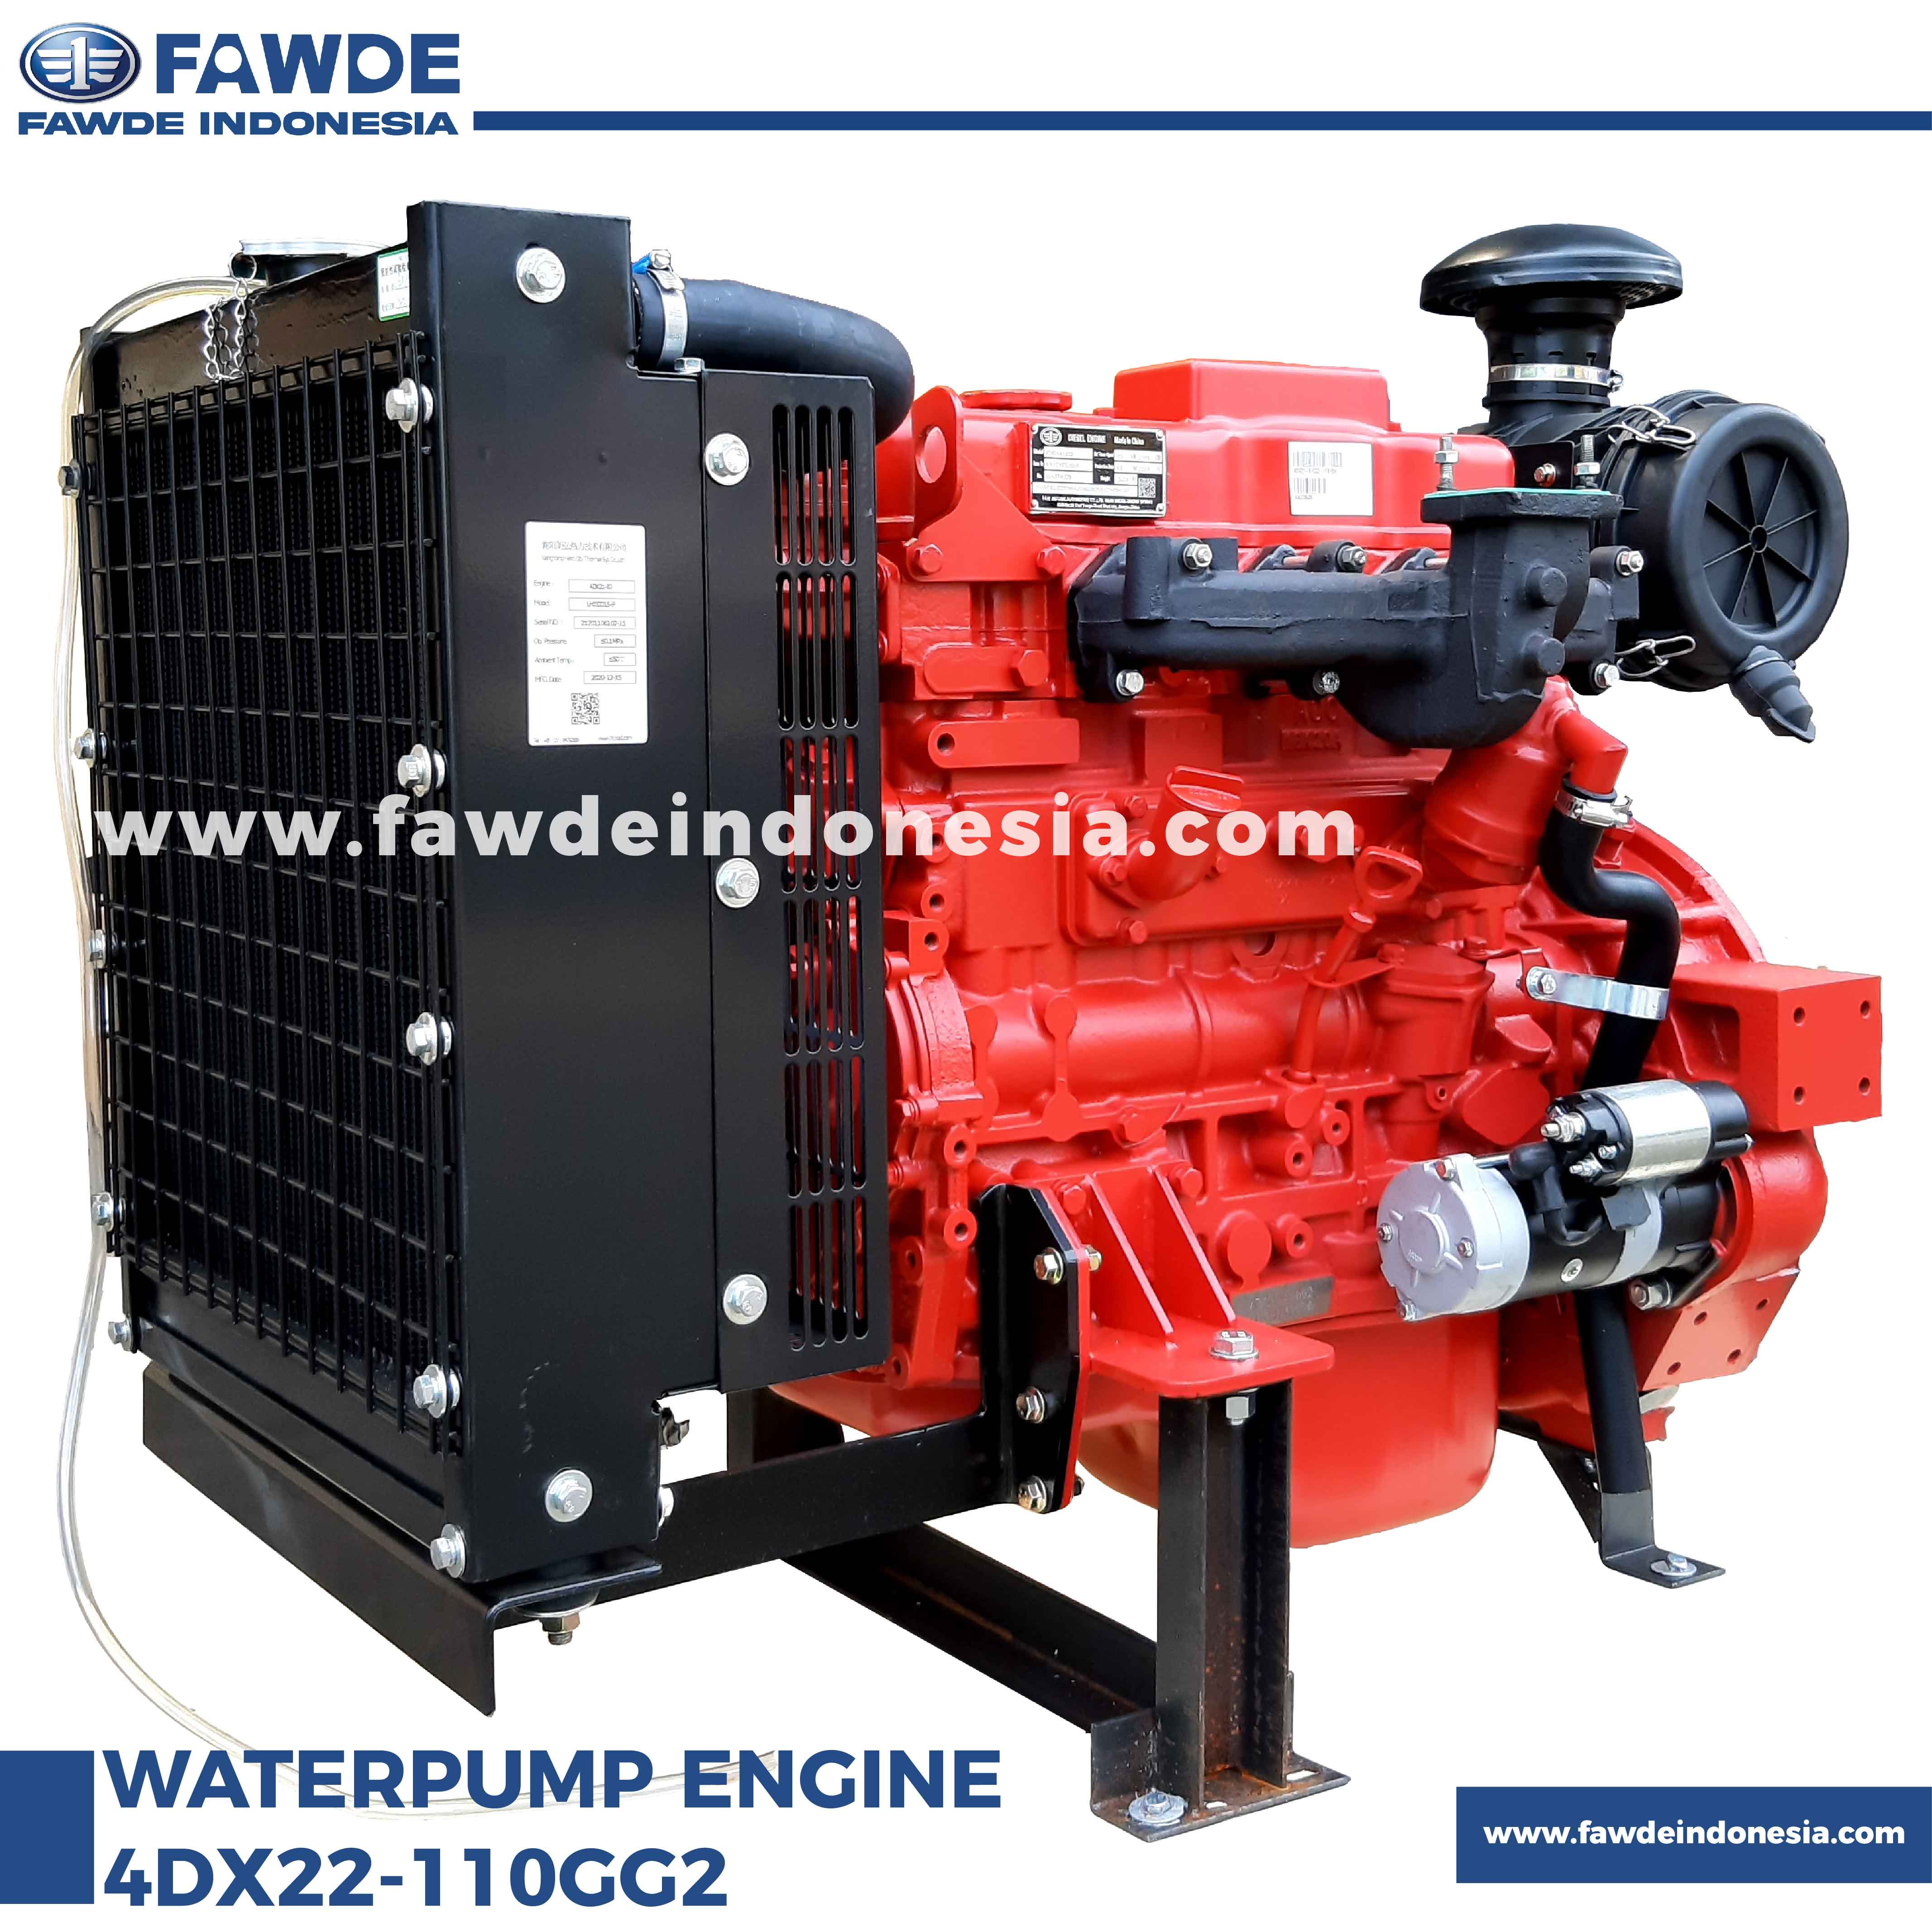 waterpump engine 4DX22-110GG2_3